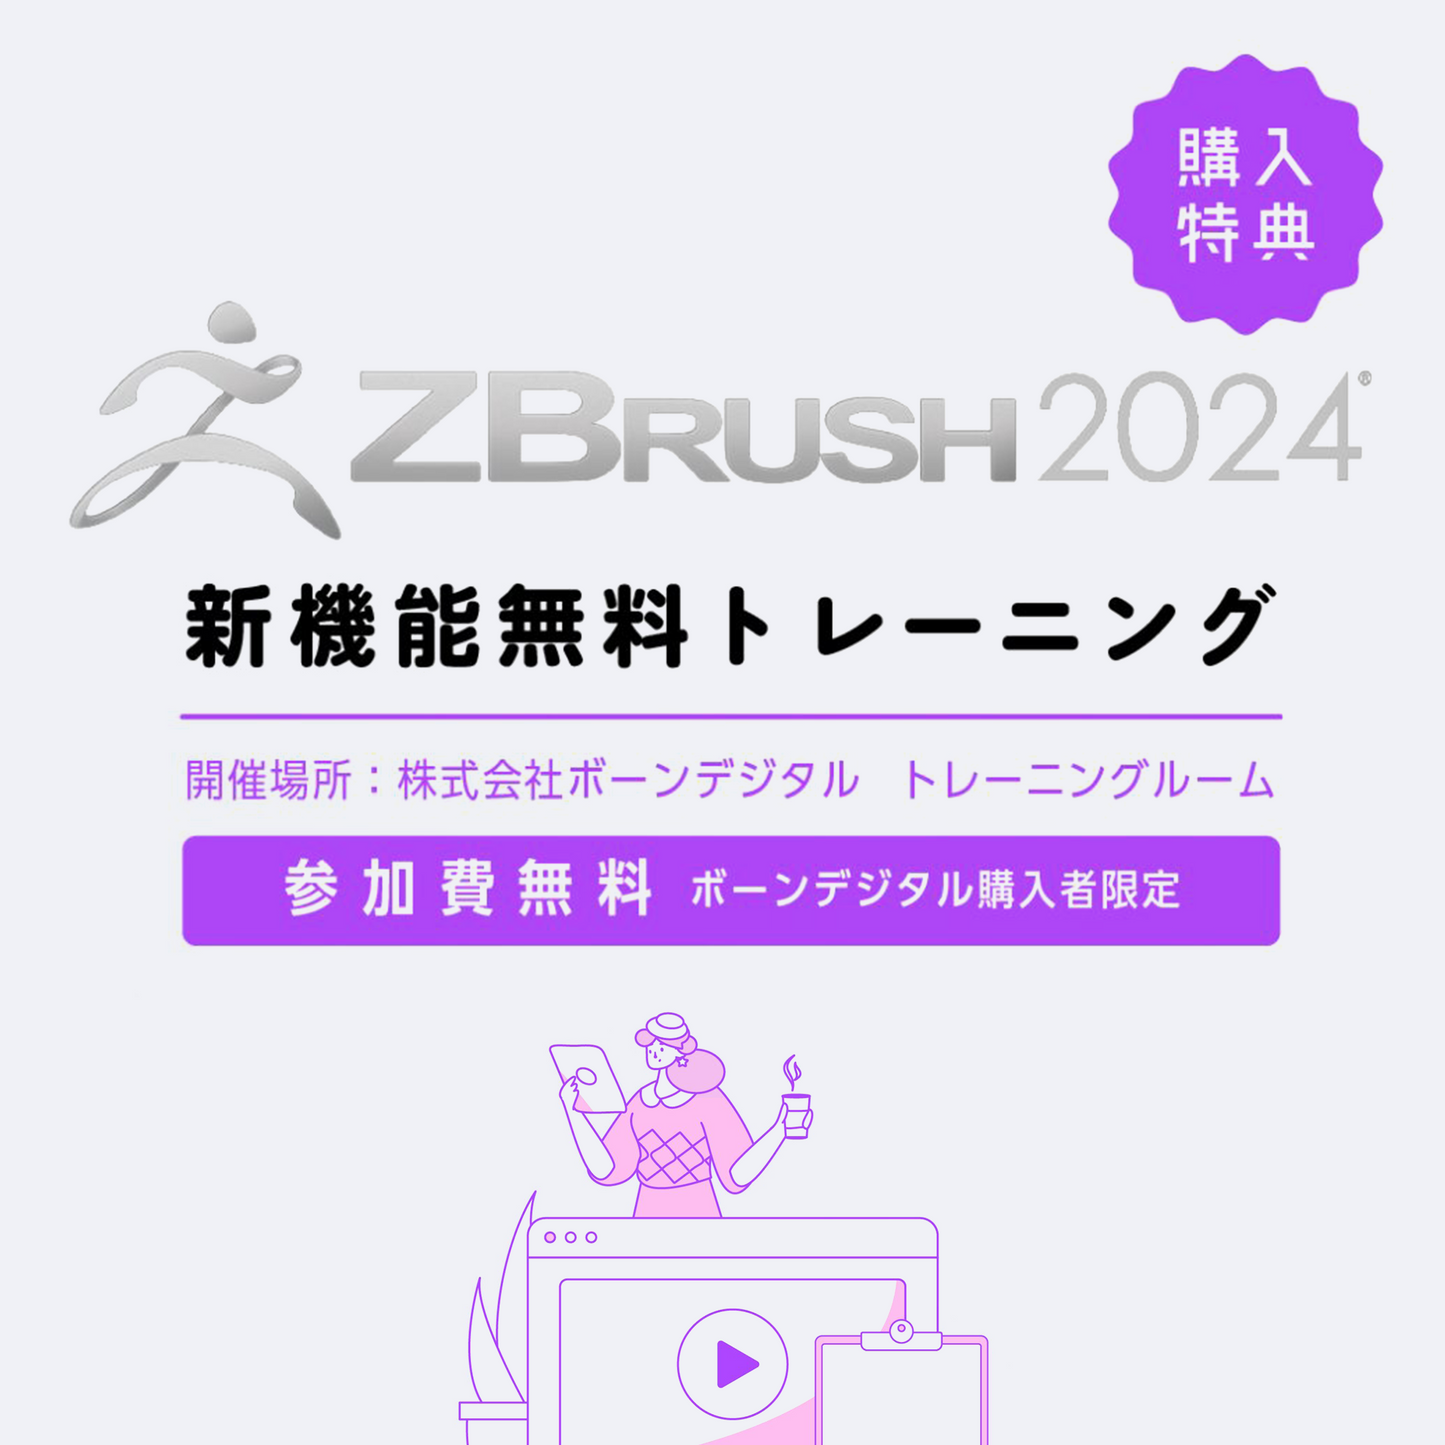 ZBrush サブスクリプション